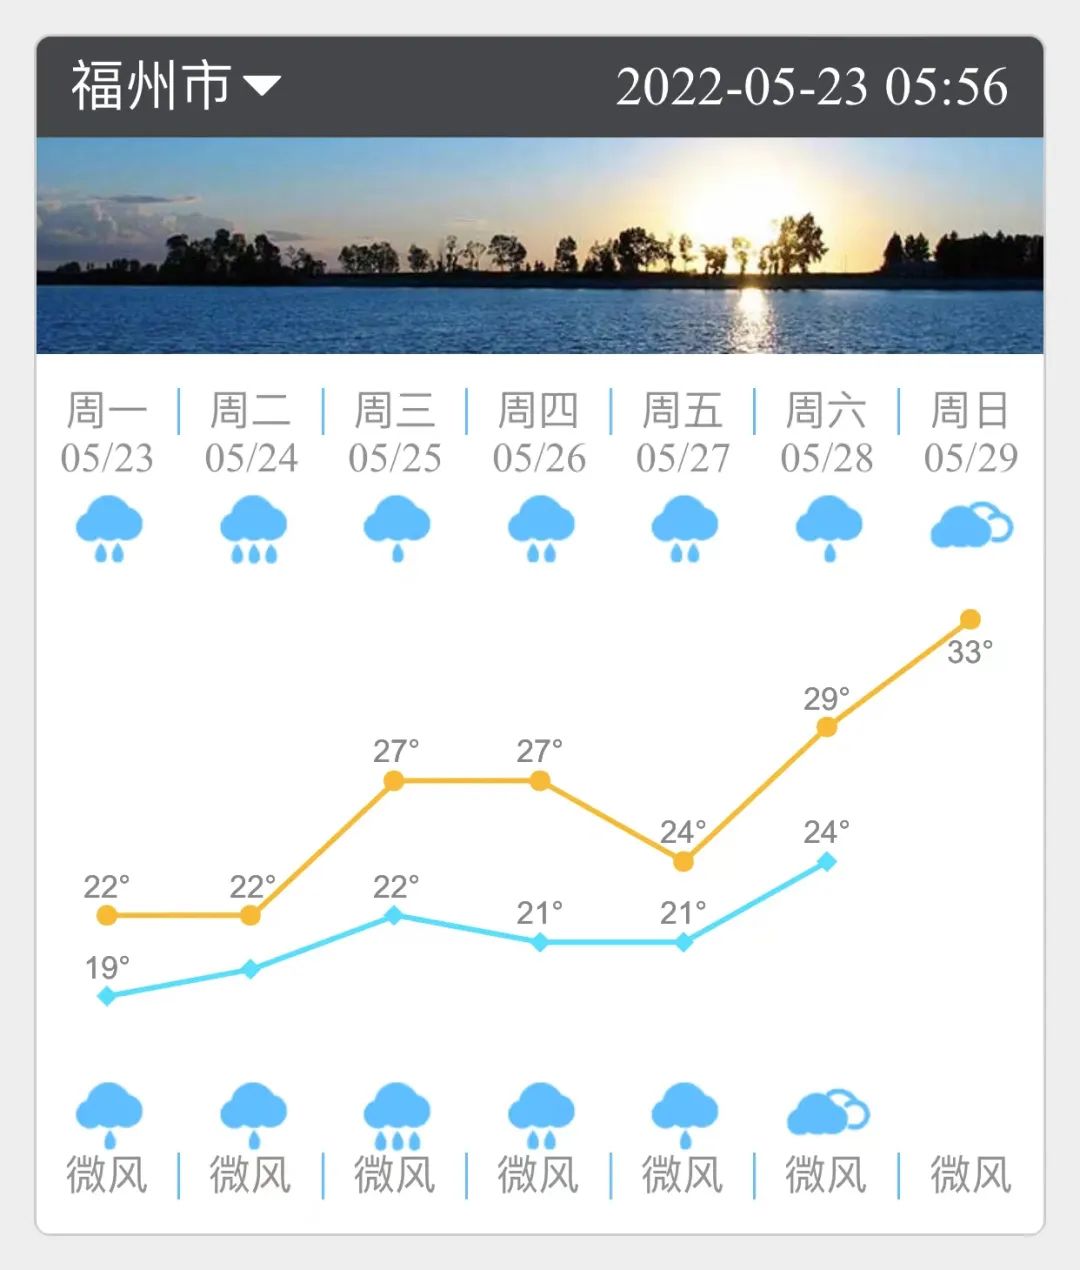 福州今明两天高温仅22℃ 要及时增减衣物